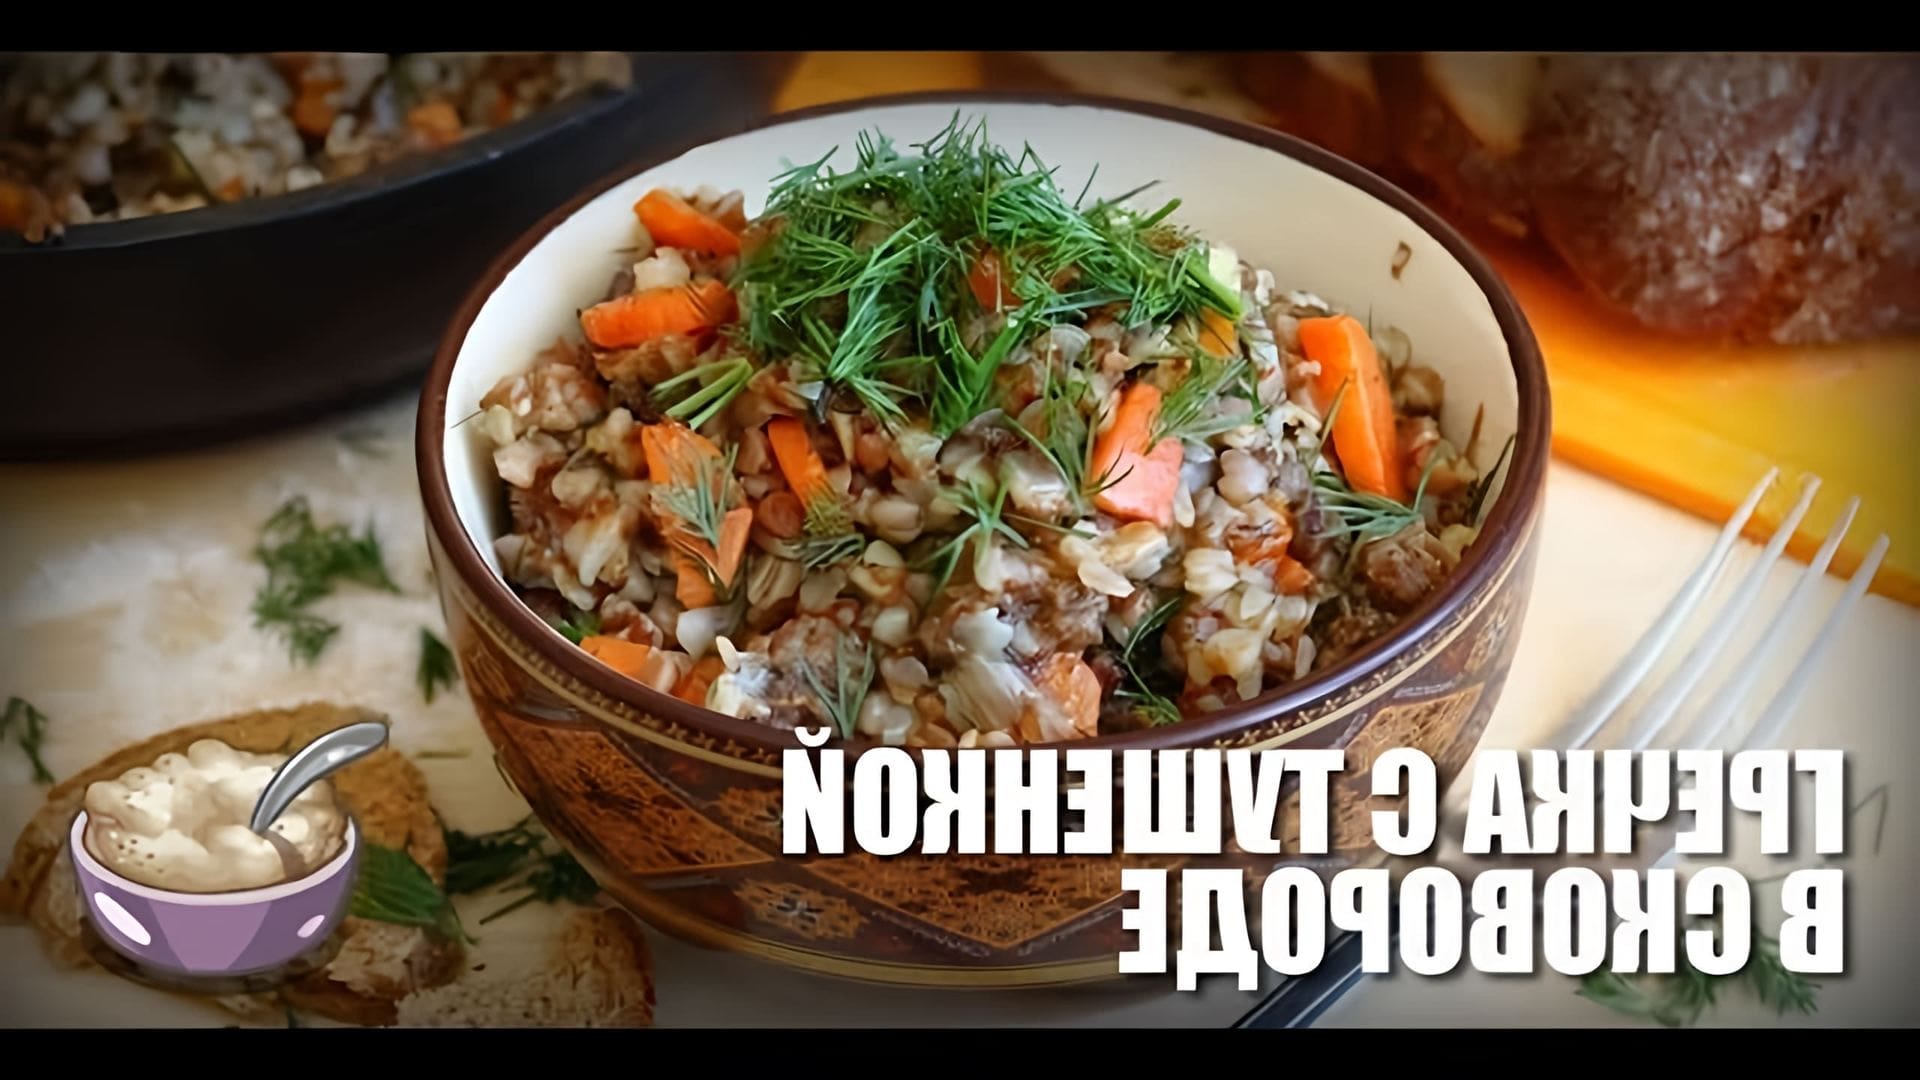 В этом видео демонстрируется рецепт приготовления гречки с тушенкой в сковороде